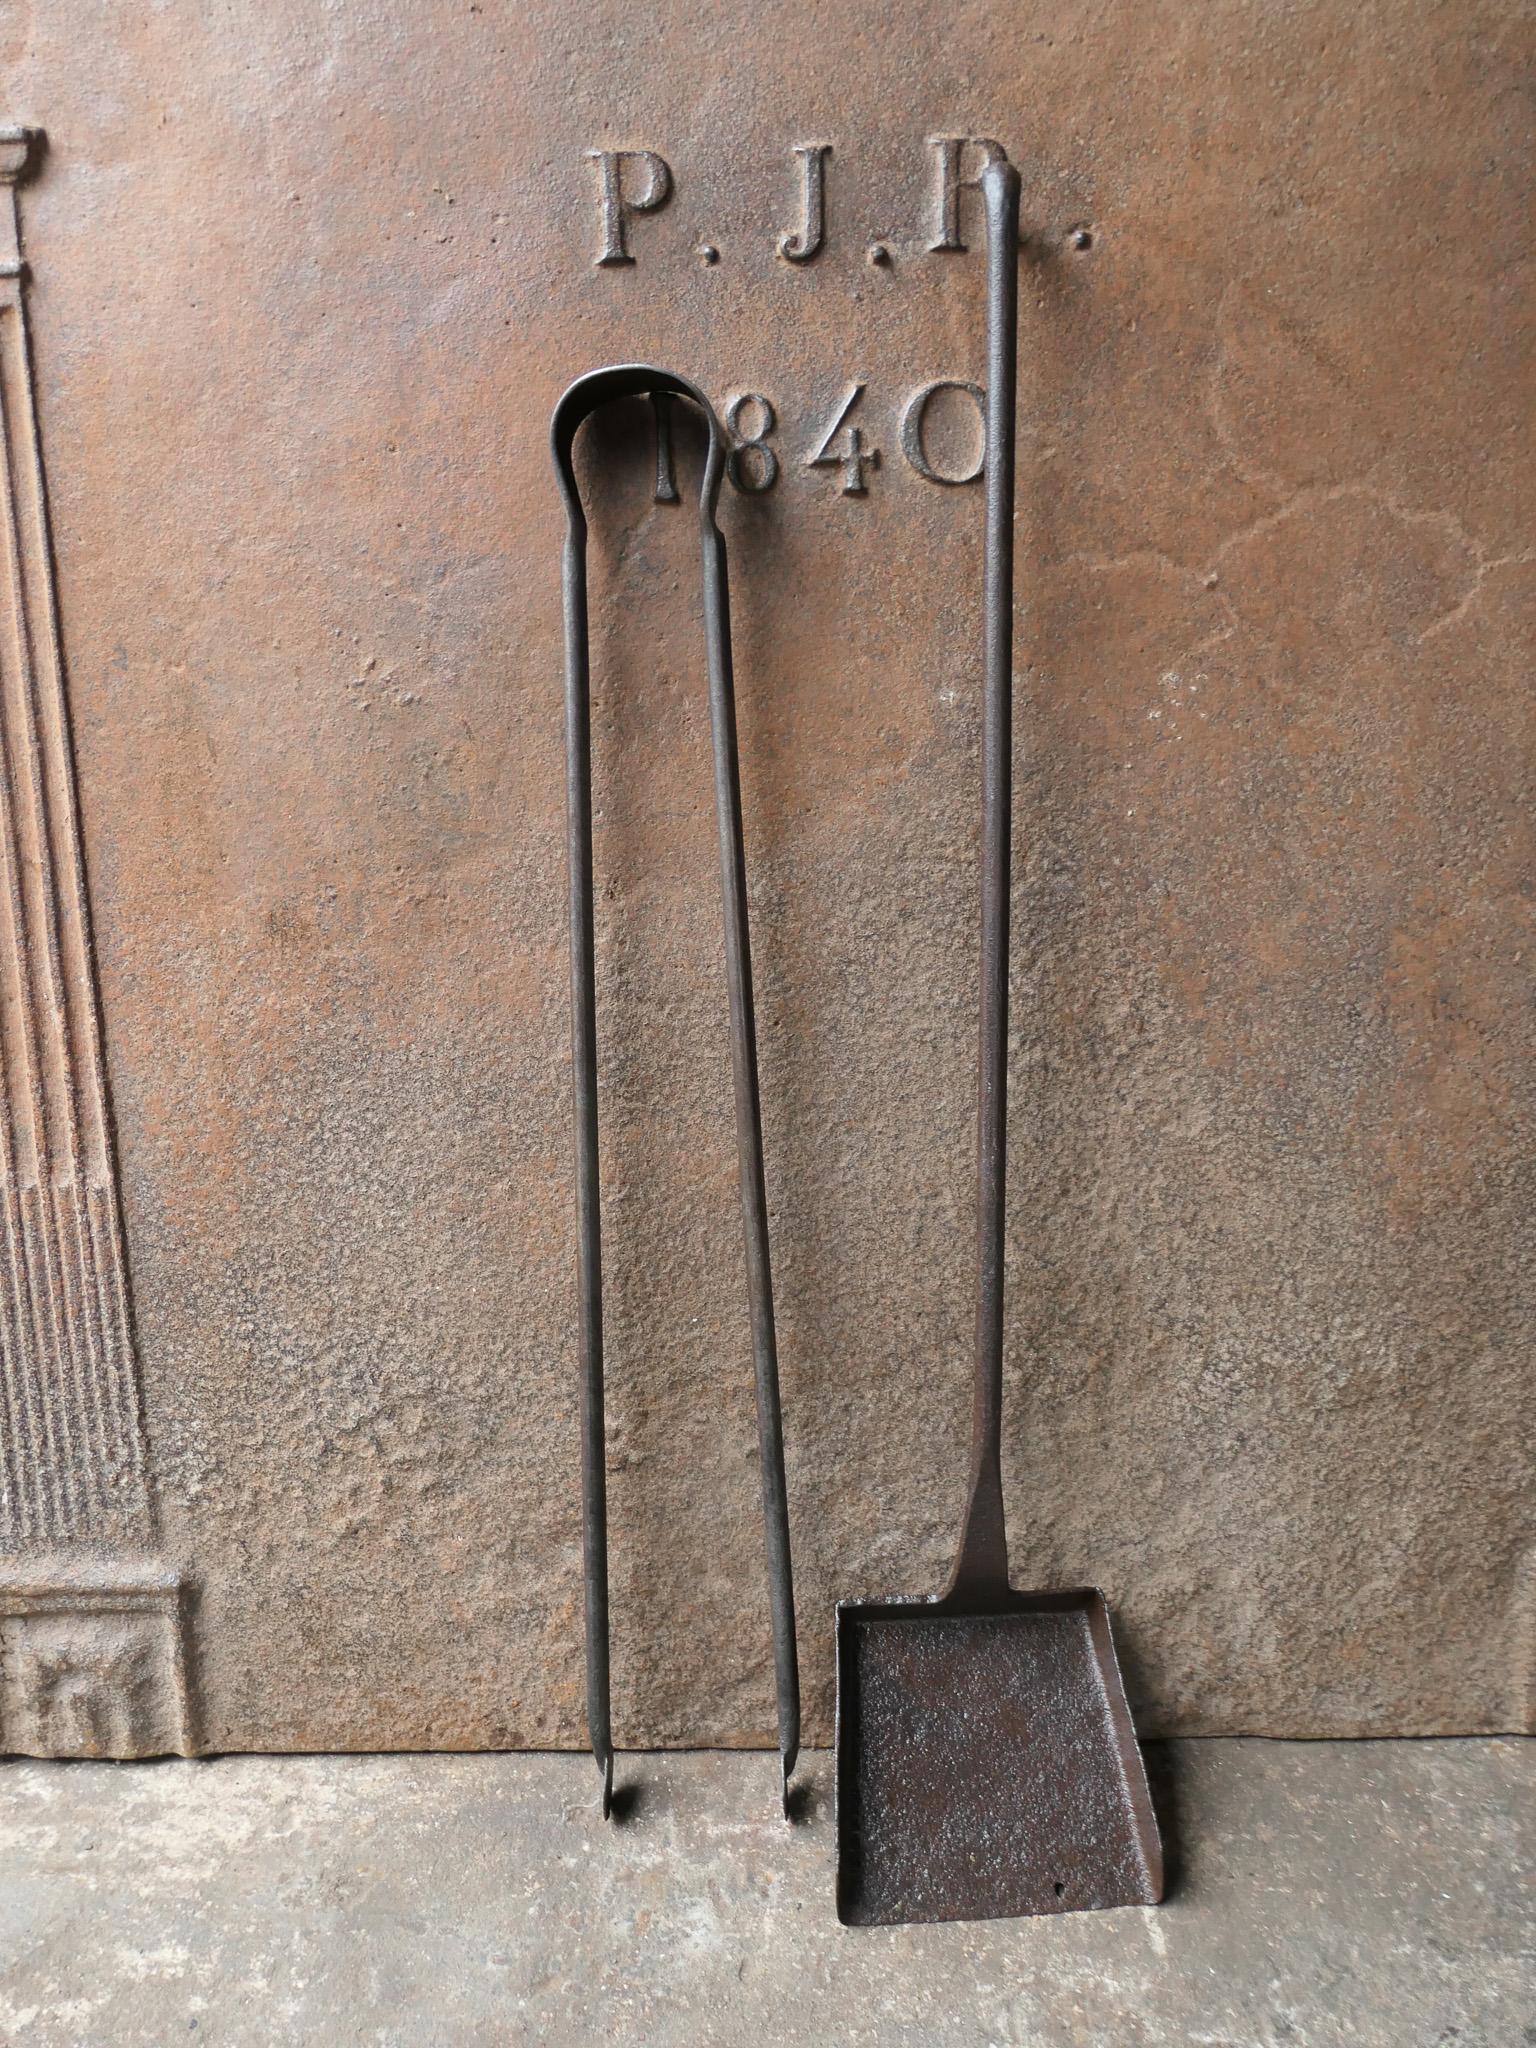 Ensemble d'outils de cheminée rustique français du 18e-19e siècle. Le set d'outils se compose d'une pince à cheminée et d'une pelle. Les outils sont en fer forgé. L'ensemble est en bon état et apte à être utilisé dans la cheminée.